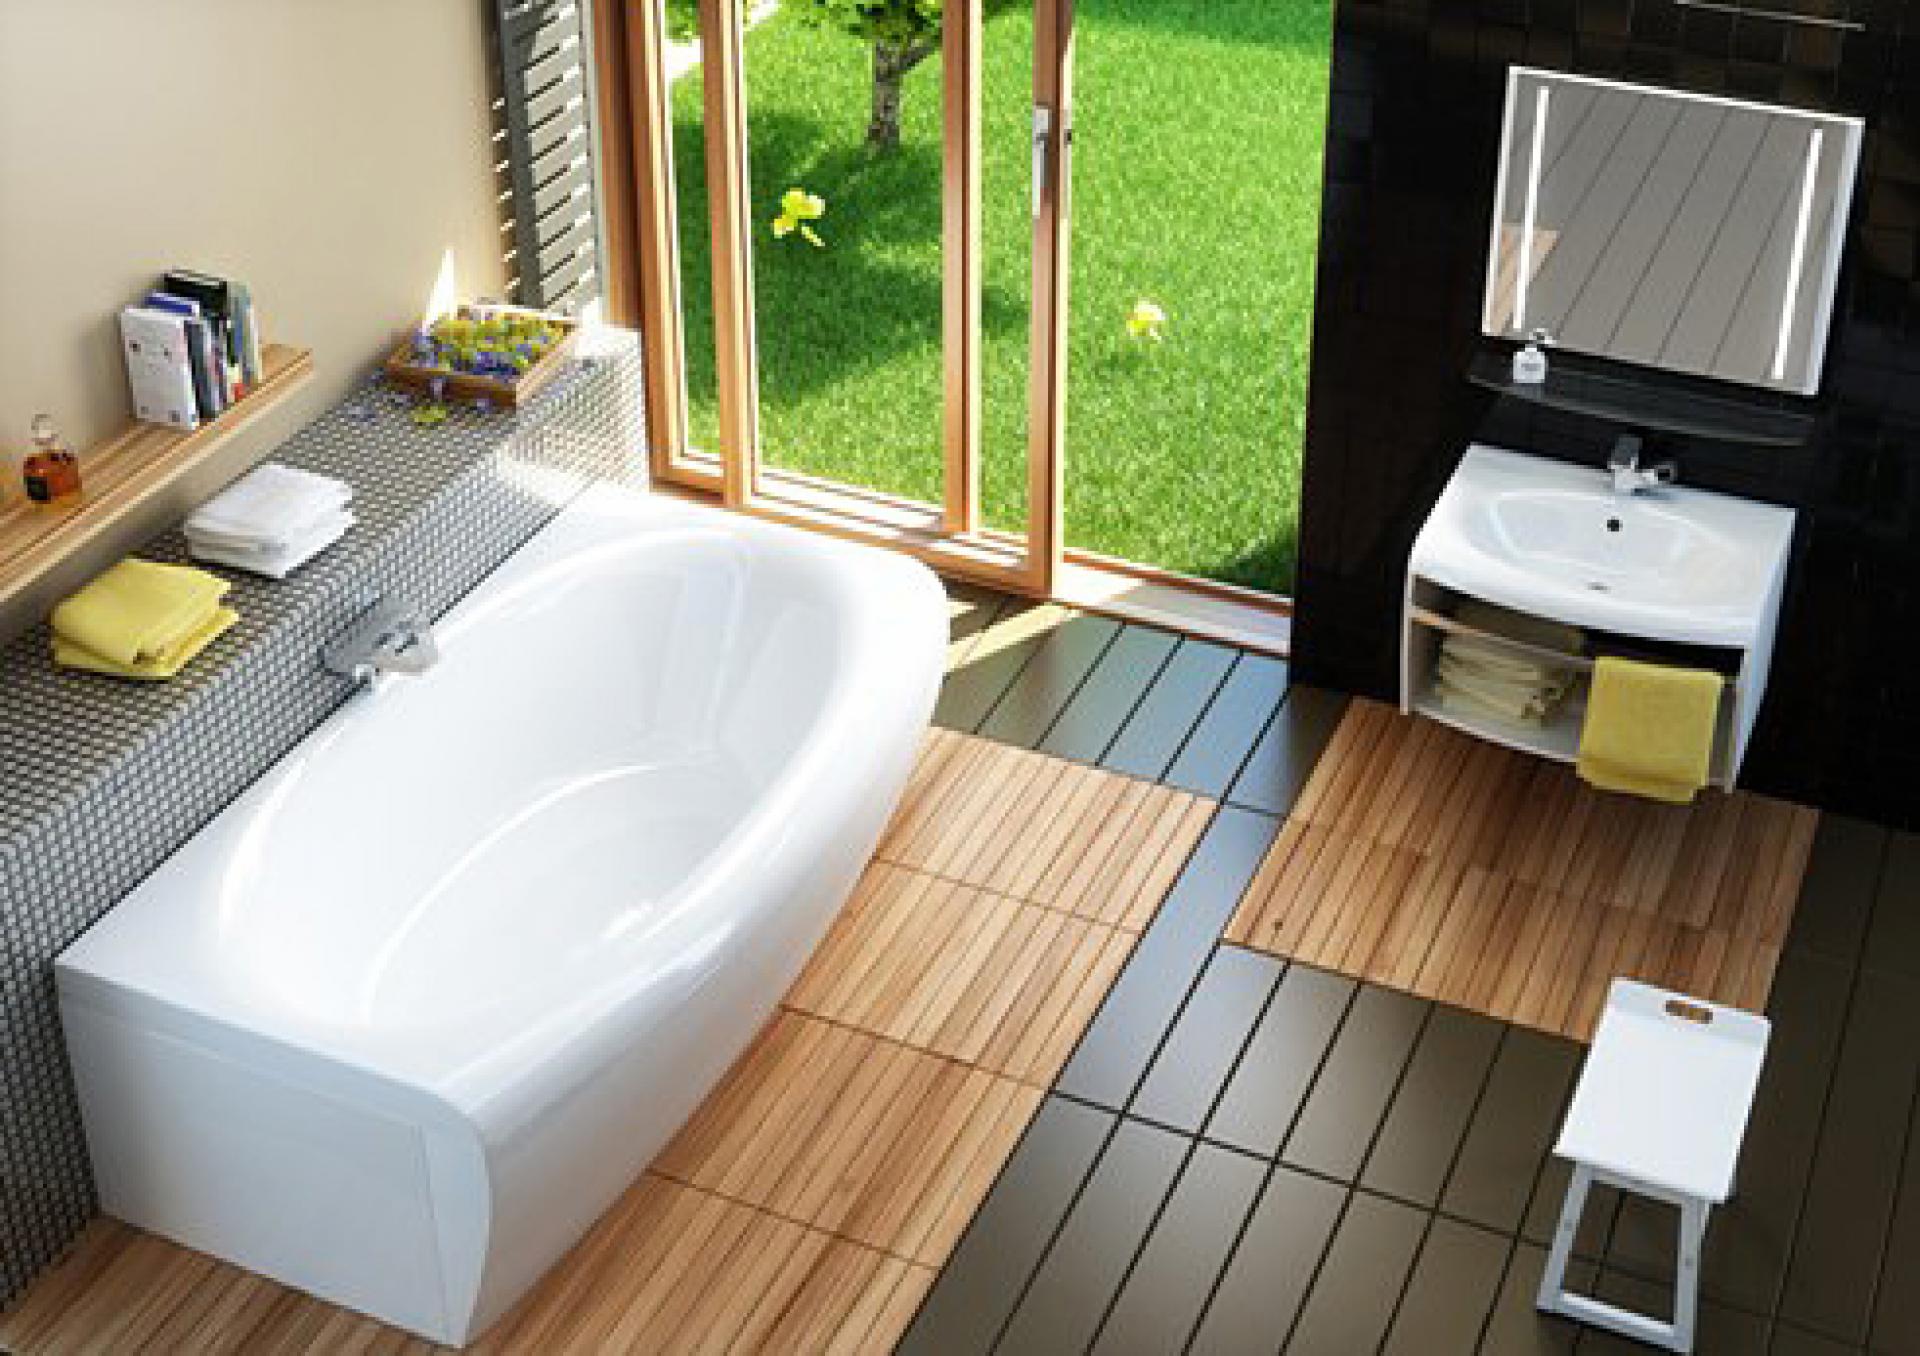 Мебель для ванной Ravak Evolution 70 белая с полотенцедержателем